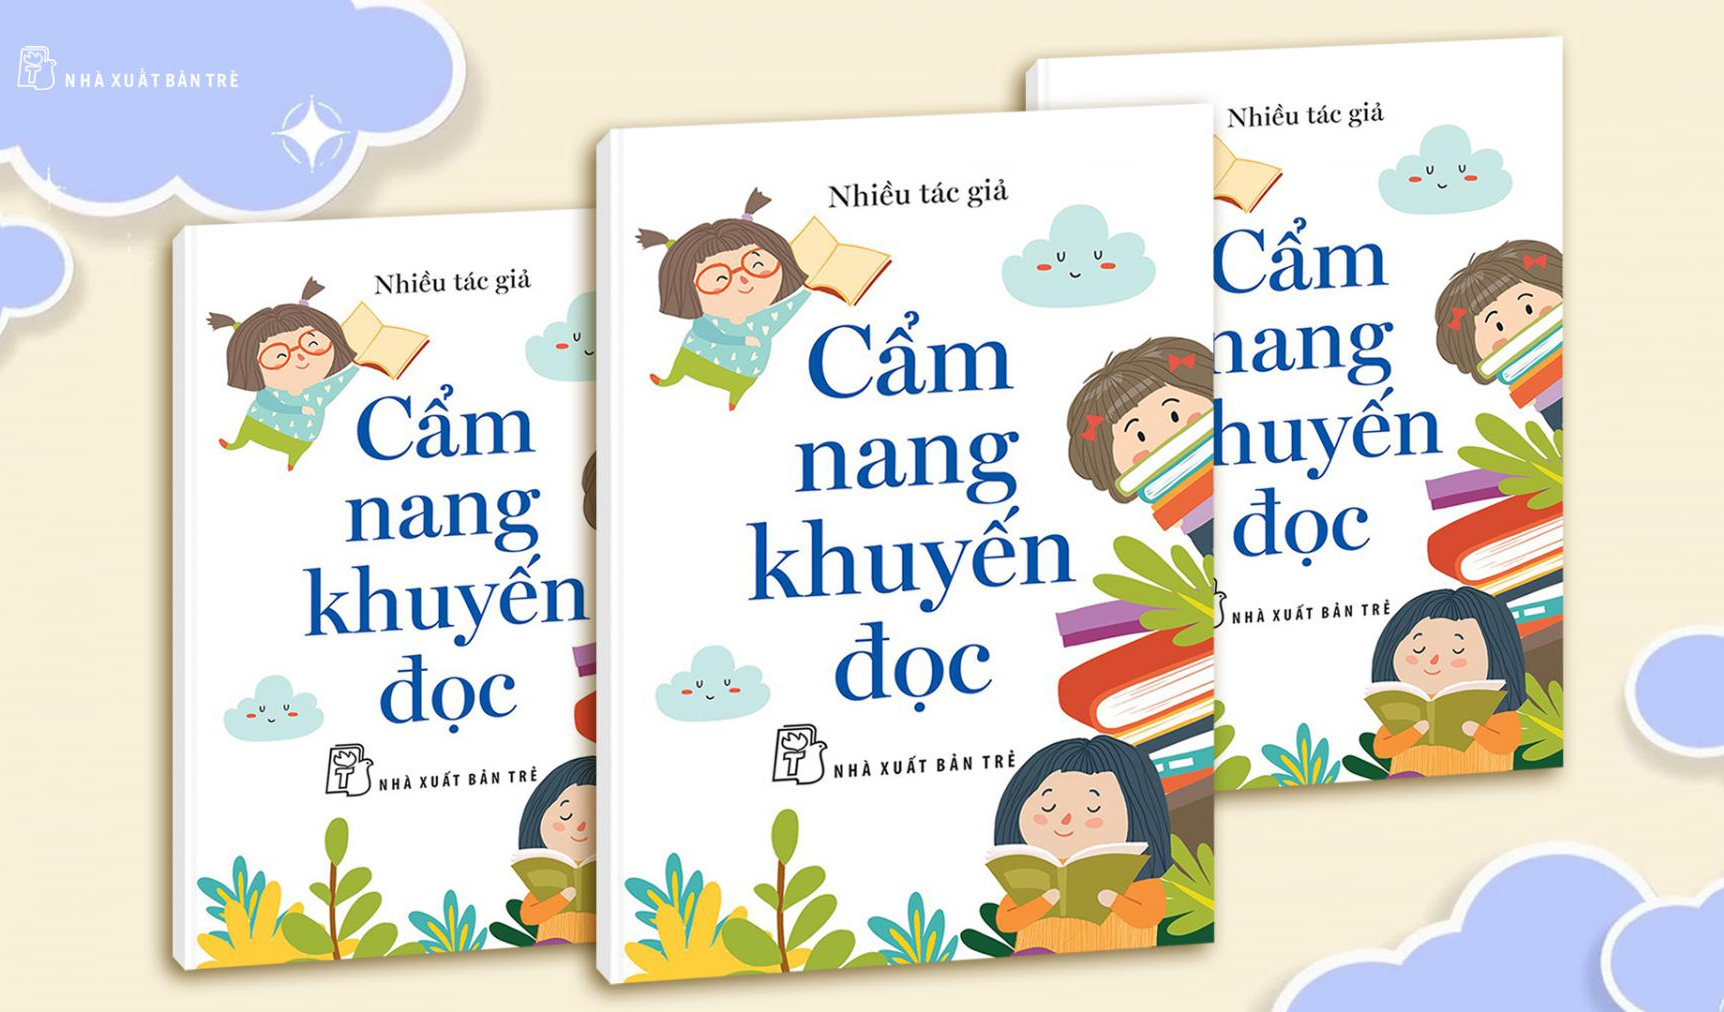 NXB Trẻ tặng 5.000 cuốn Cẩm nang khuyến đọc nhân Ngày sách Việt Nam - Ảnh 2.